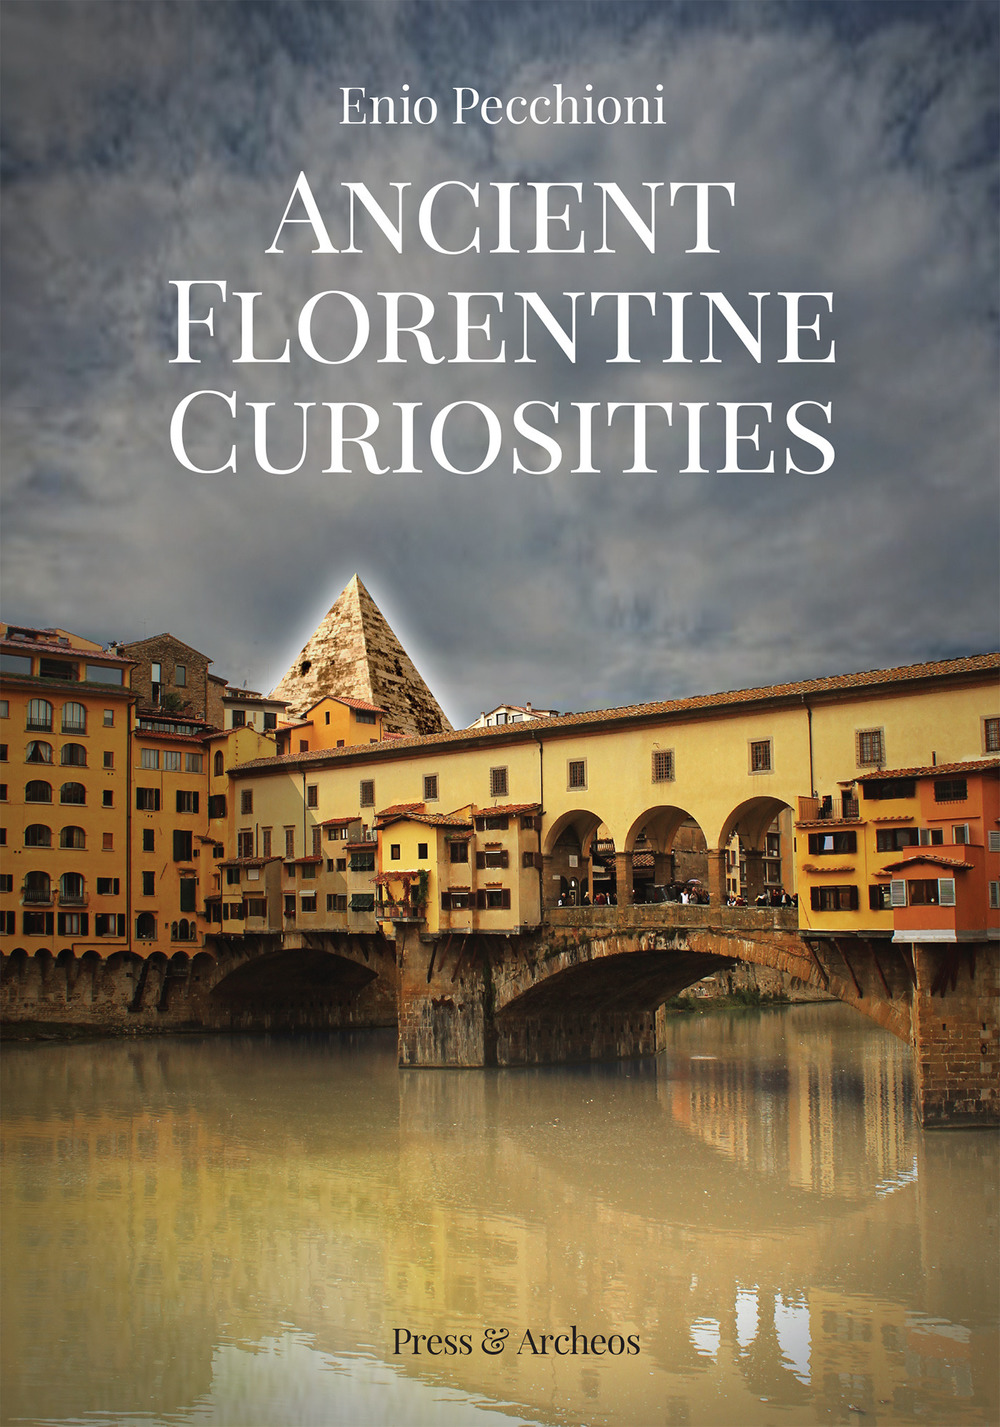 Ancient florentine curiosities